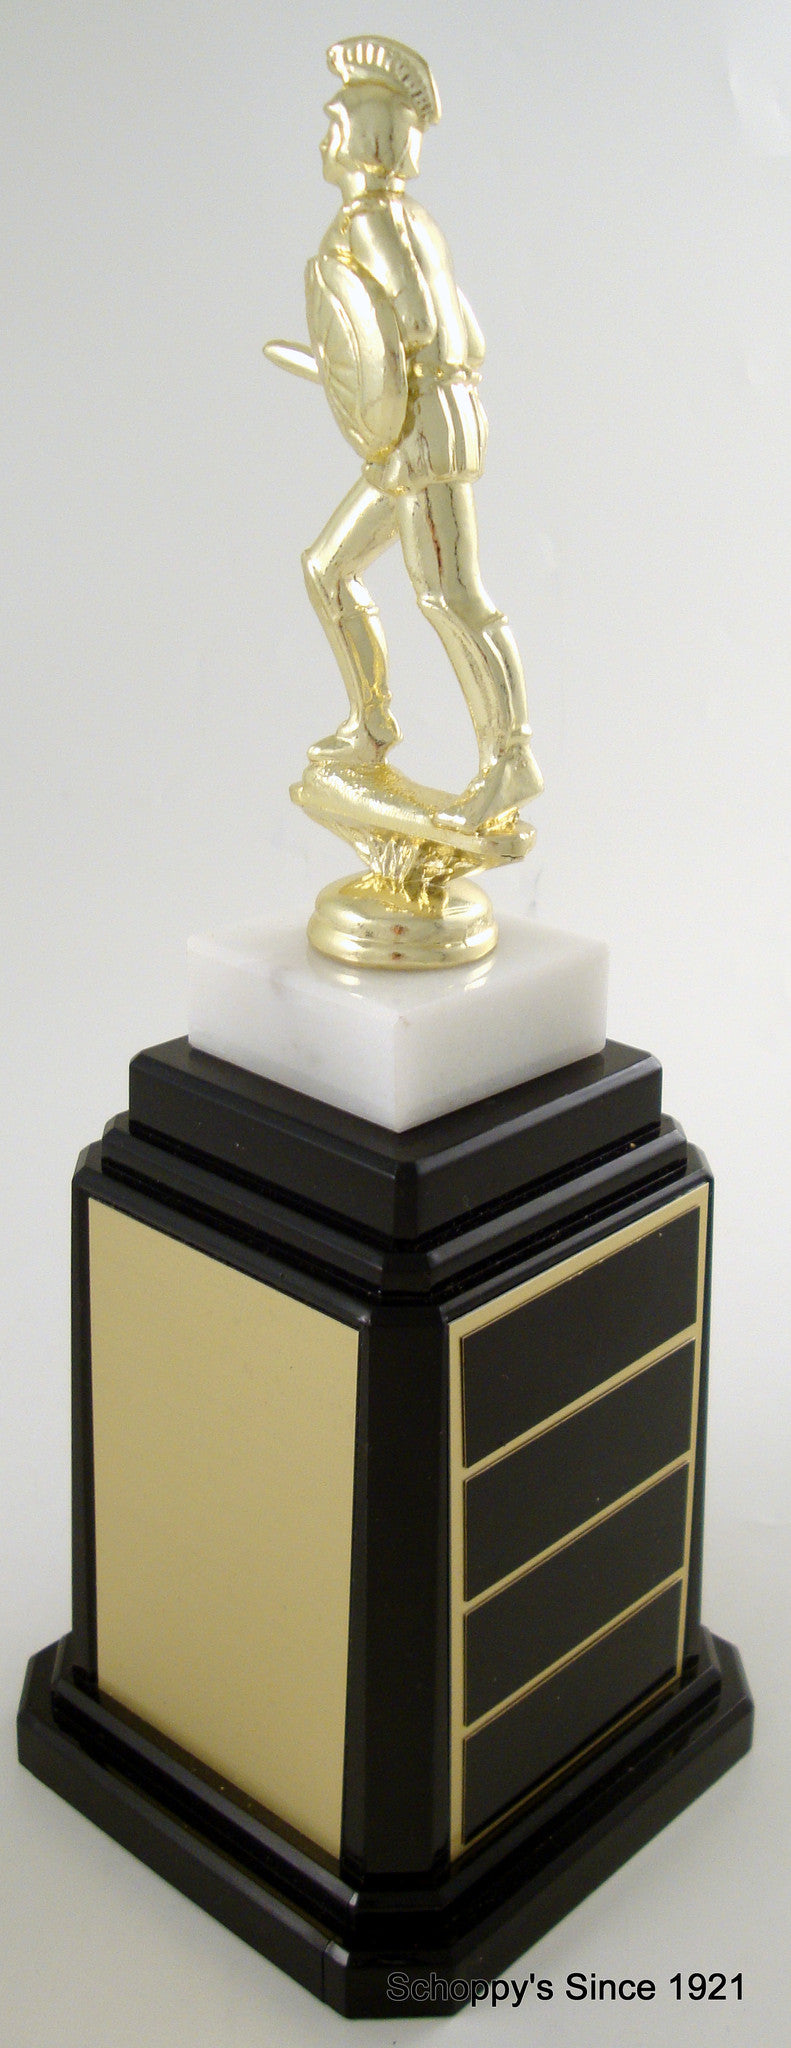 Trojan Figure Tower Base Trophy-Trophy-Schoppy&